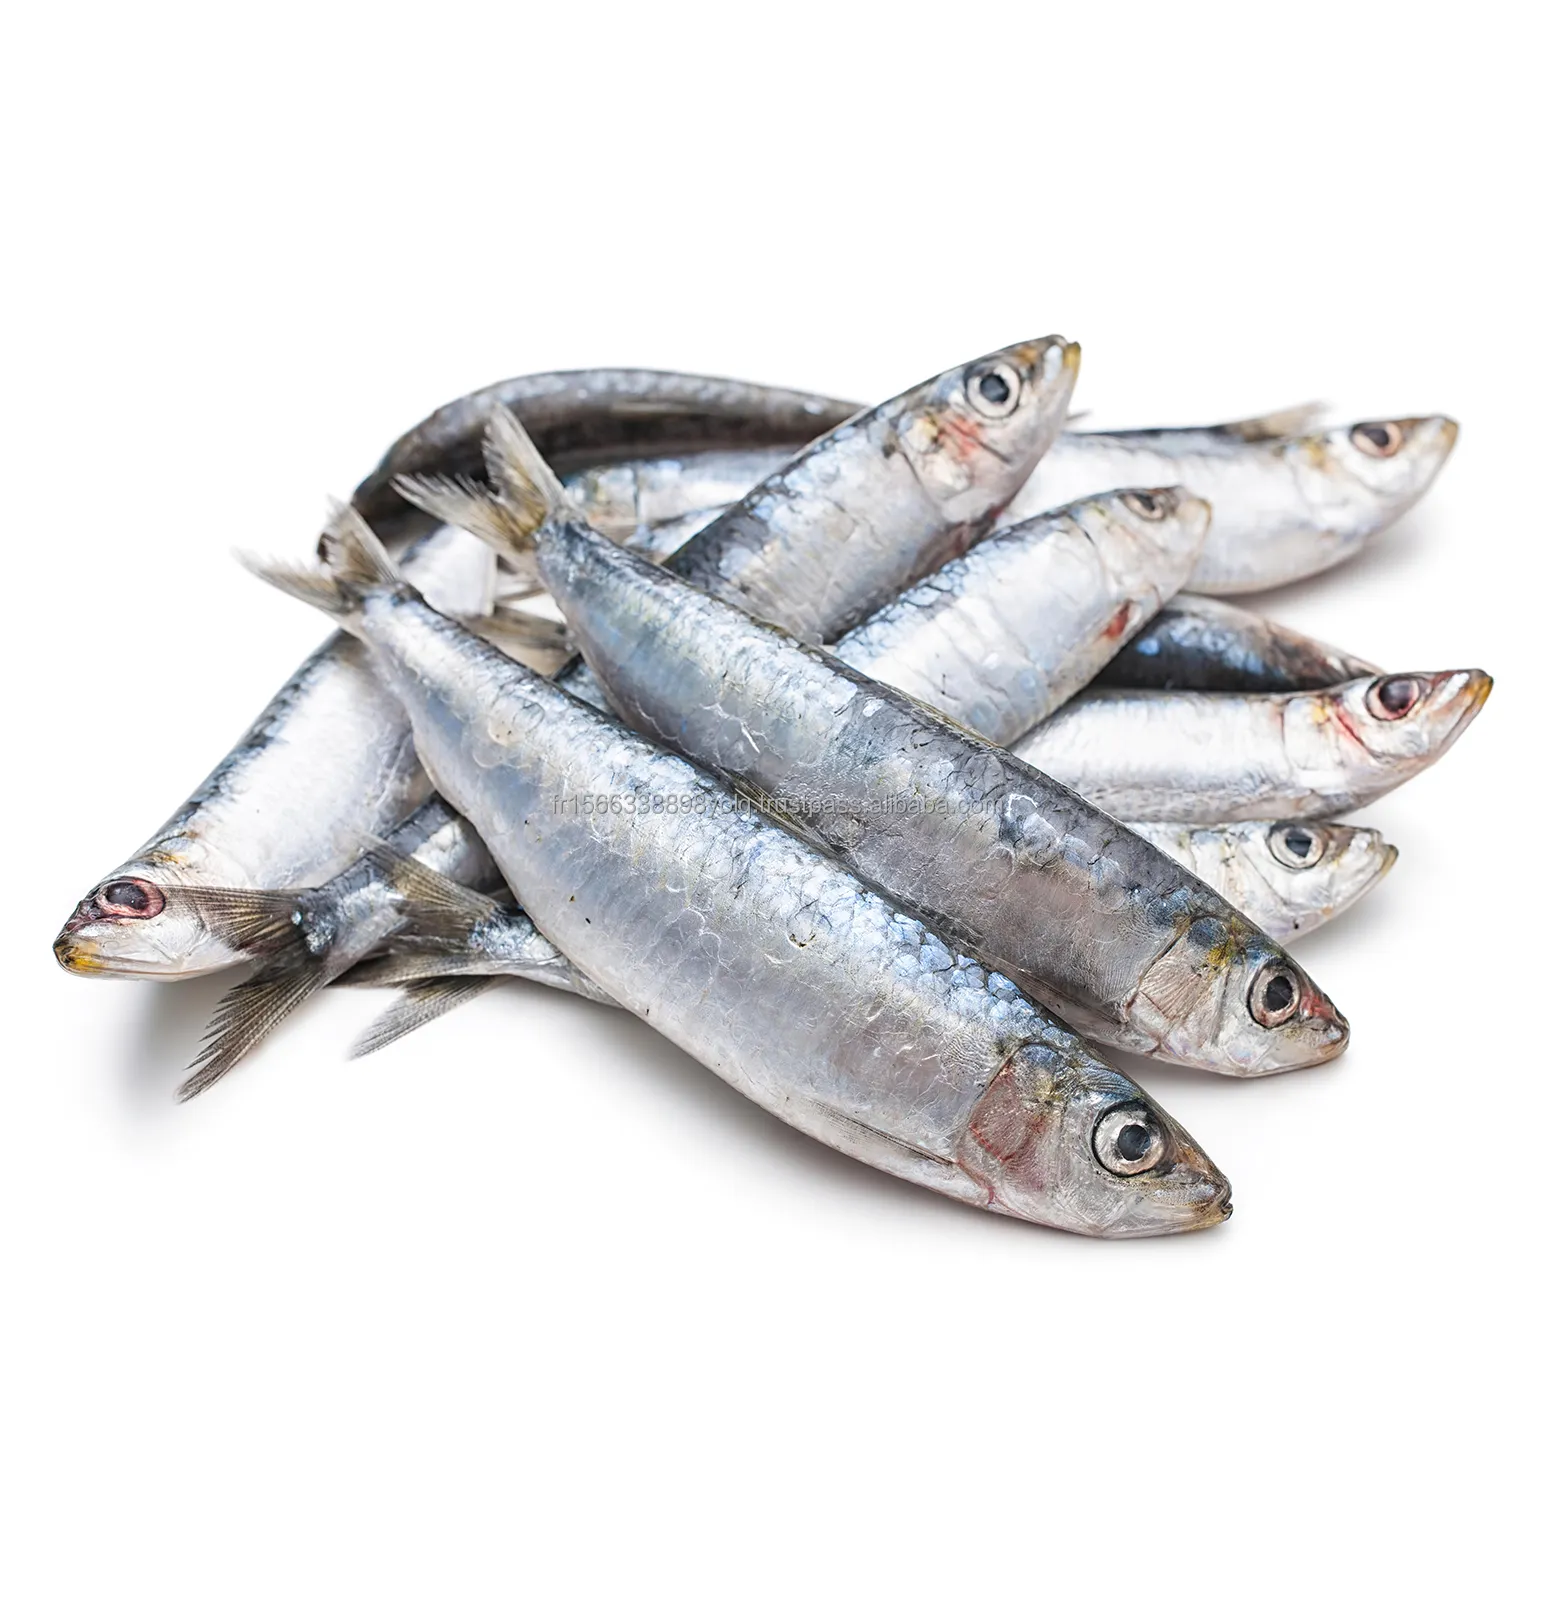 फ्रोजन पूरी सार्डिन मछली (प्रति किलो बेची जाती है) (1.5 किलो में पैक)